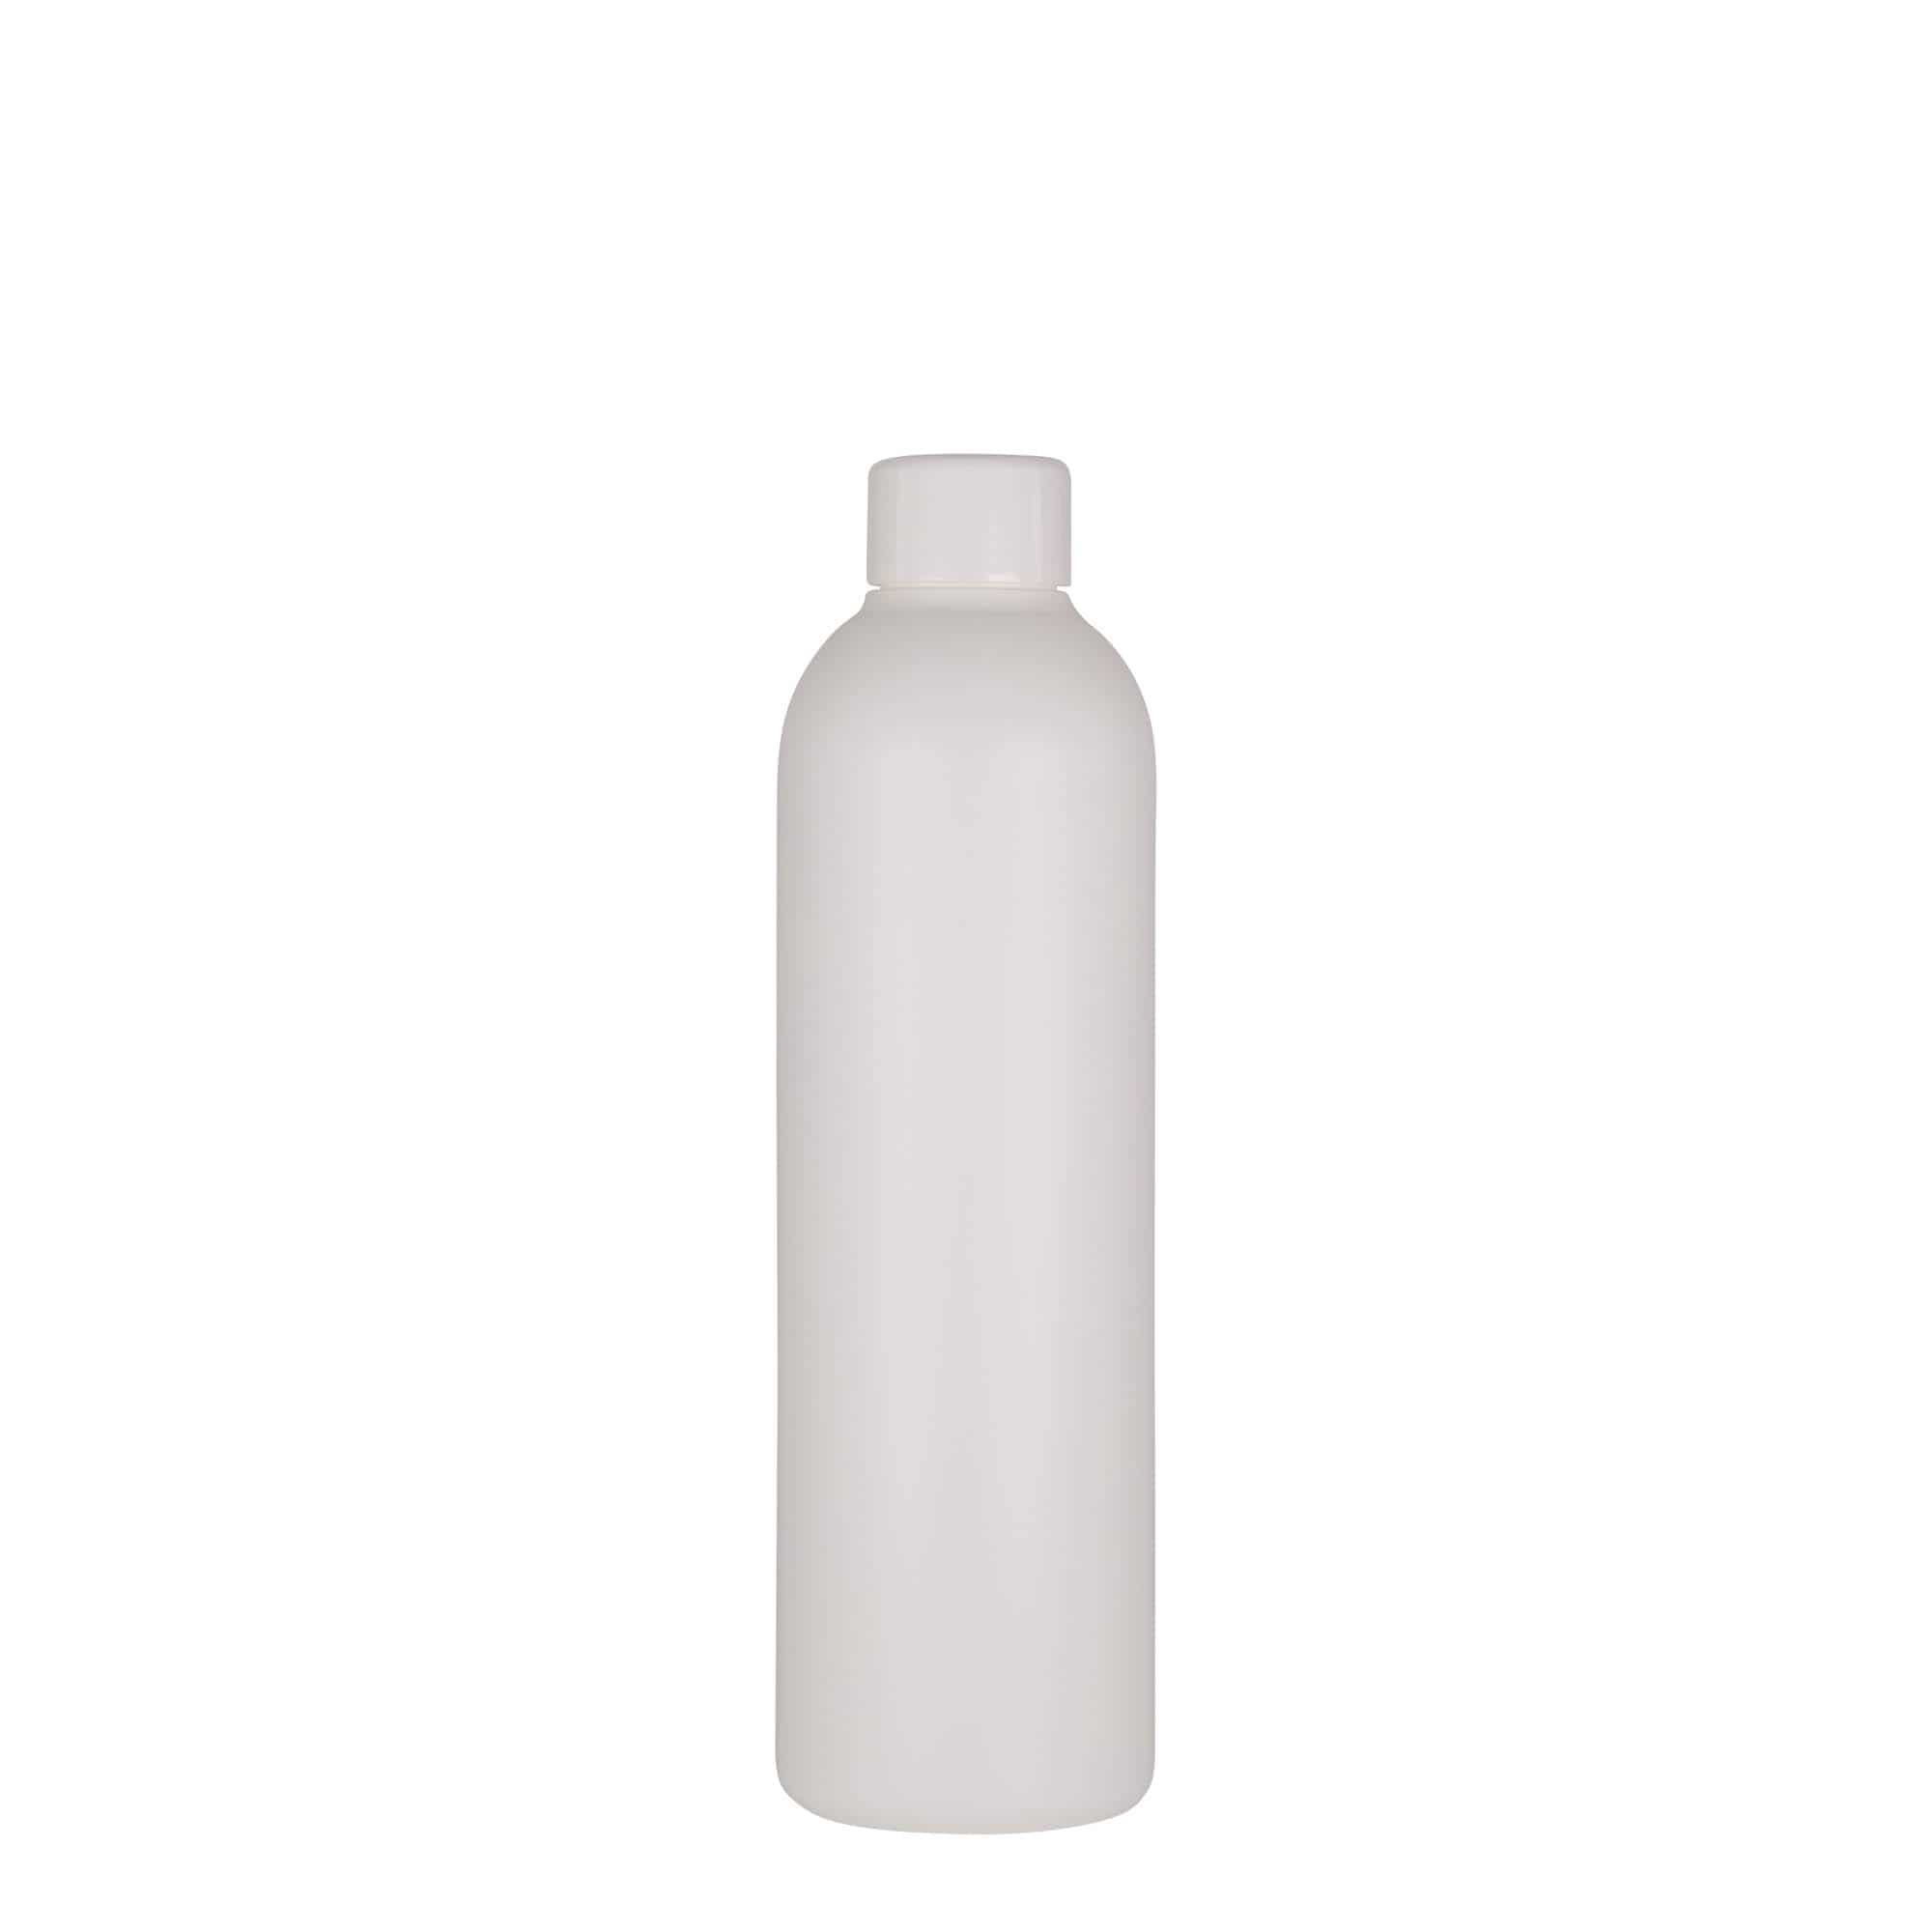 250 ml plastic bottle 'Tuffy', HDPE, white, closure: GPI 24/410